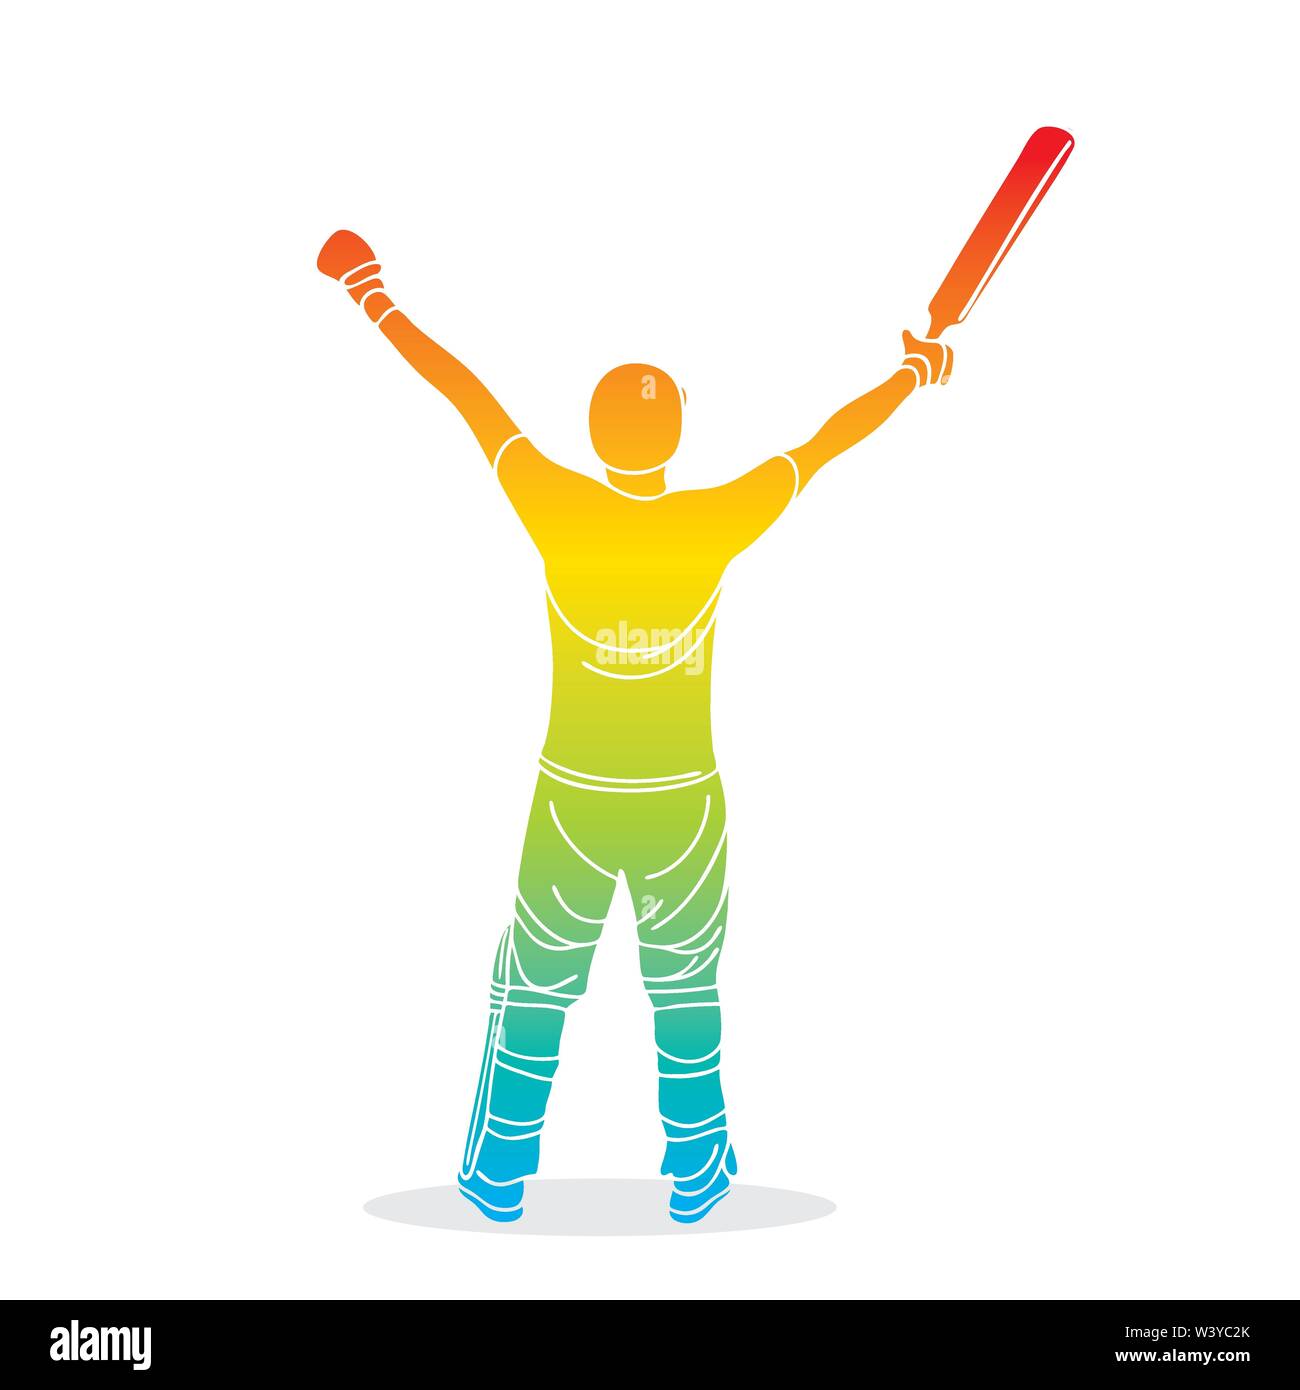 Cricket Spieler feiern Jahrhundert oder gewinnen gleiches Konzept poster Design Stock Vektor